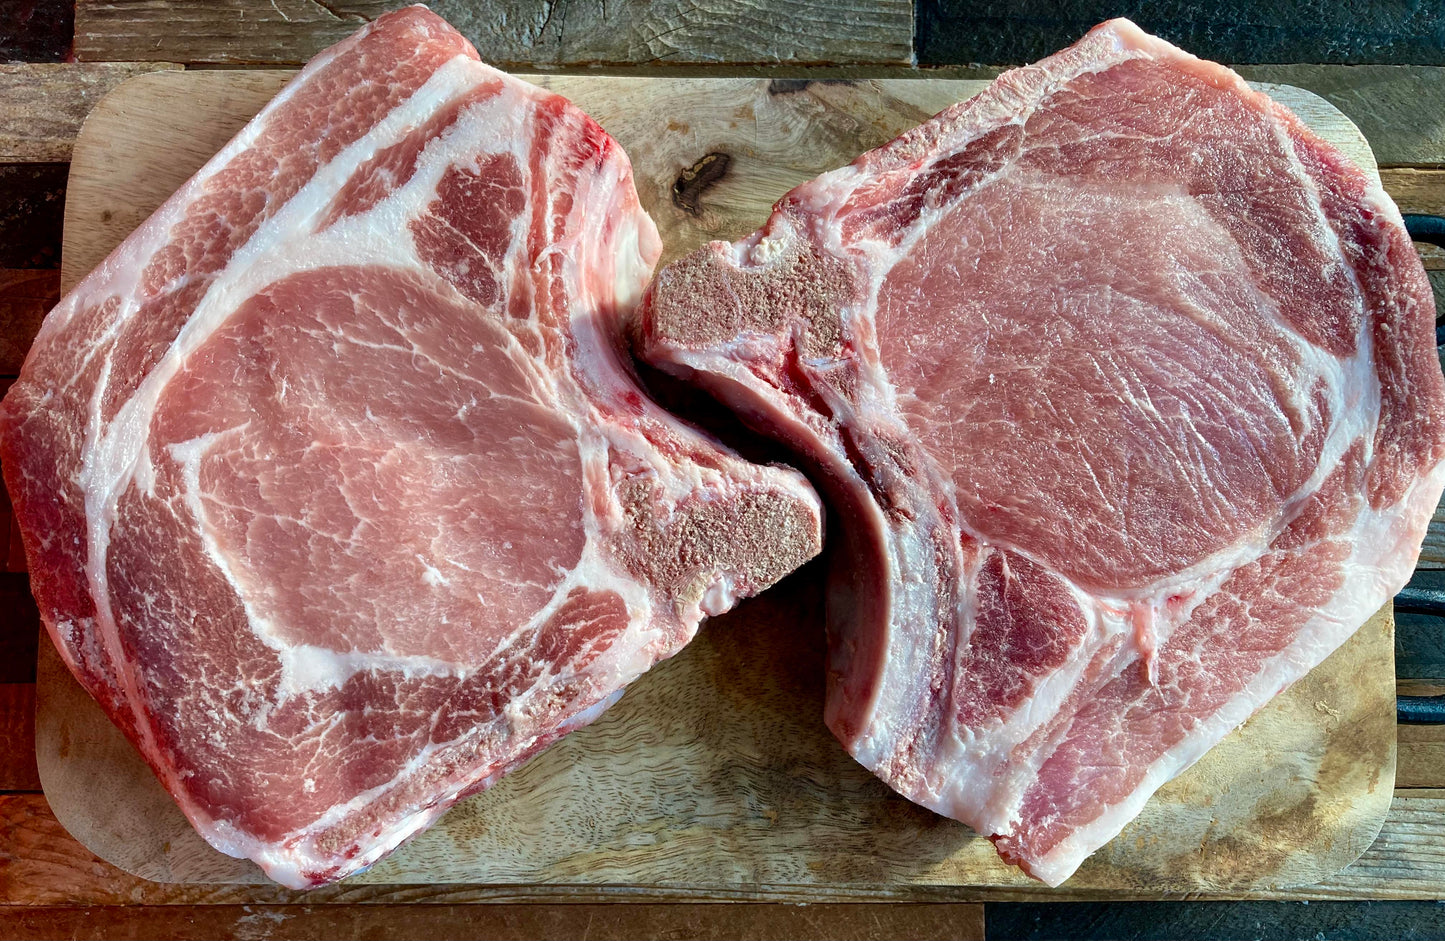 Pork chops - thick-cut Iowa Chops - 1 1/4" cut, bone-in